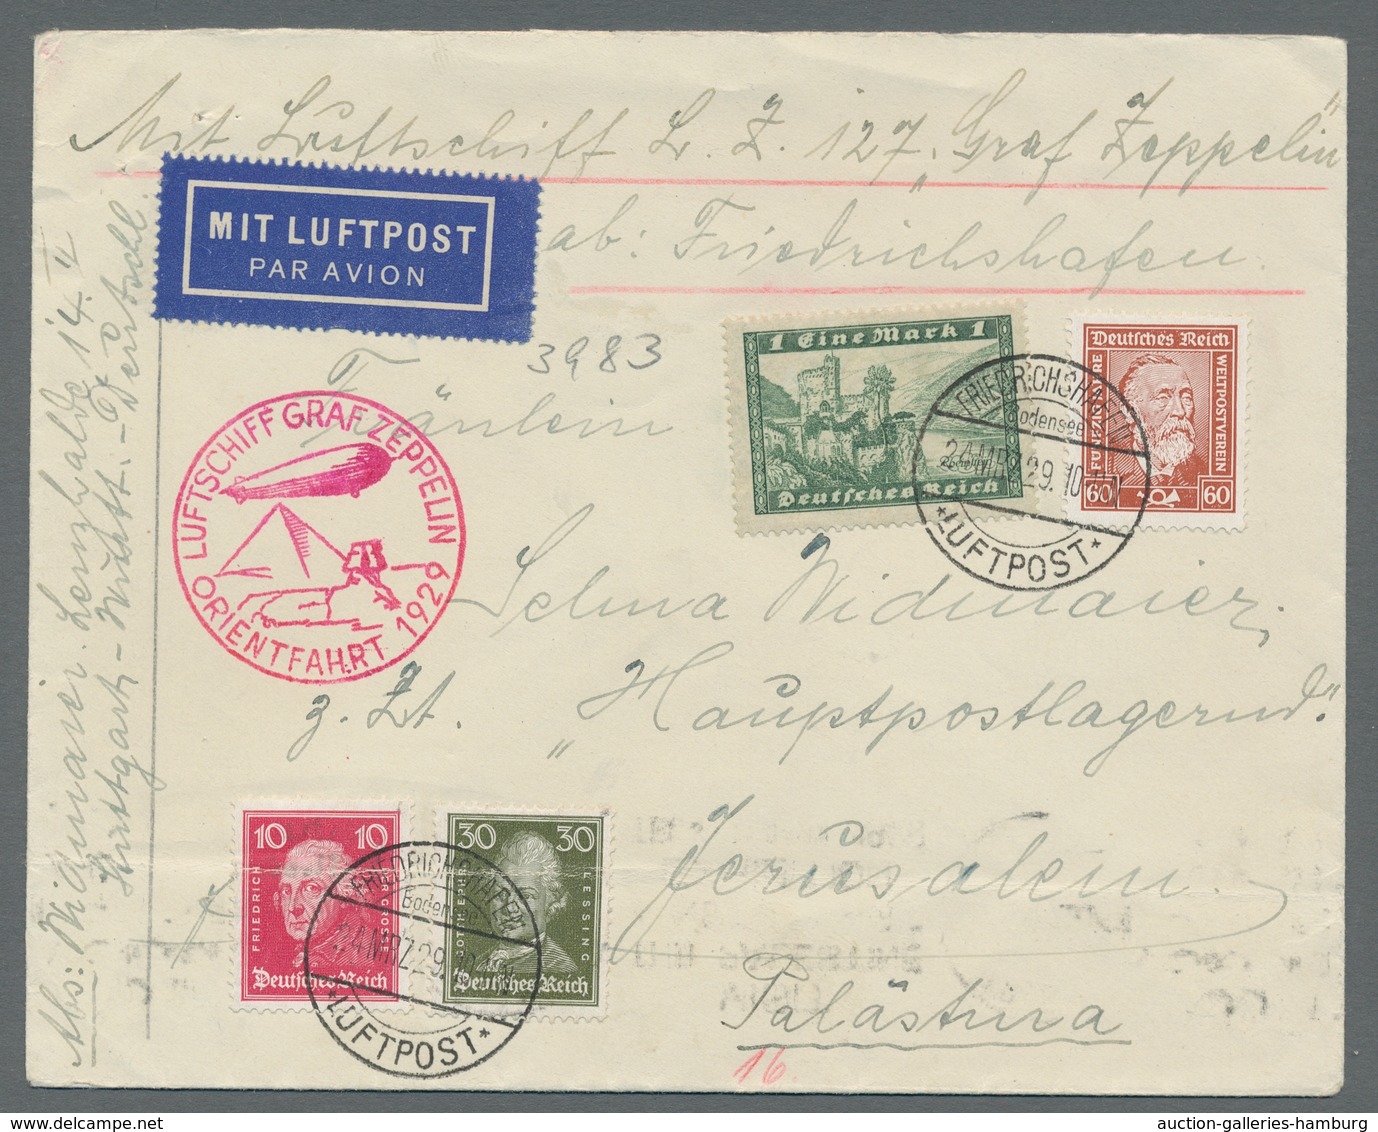 Zeppelinpost Deutschland: 1924-1938, beachtenswerte Partie von 14 Belegen mit u.a. einem Brief der e